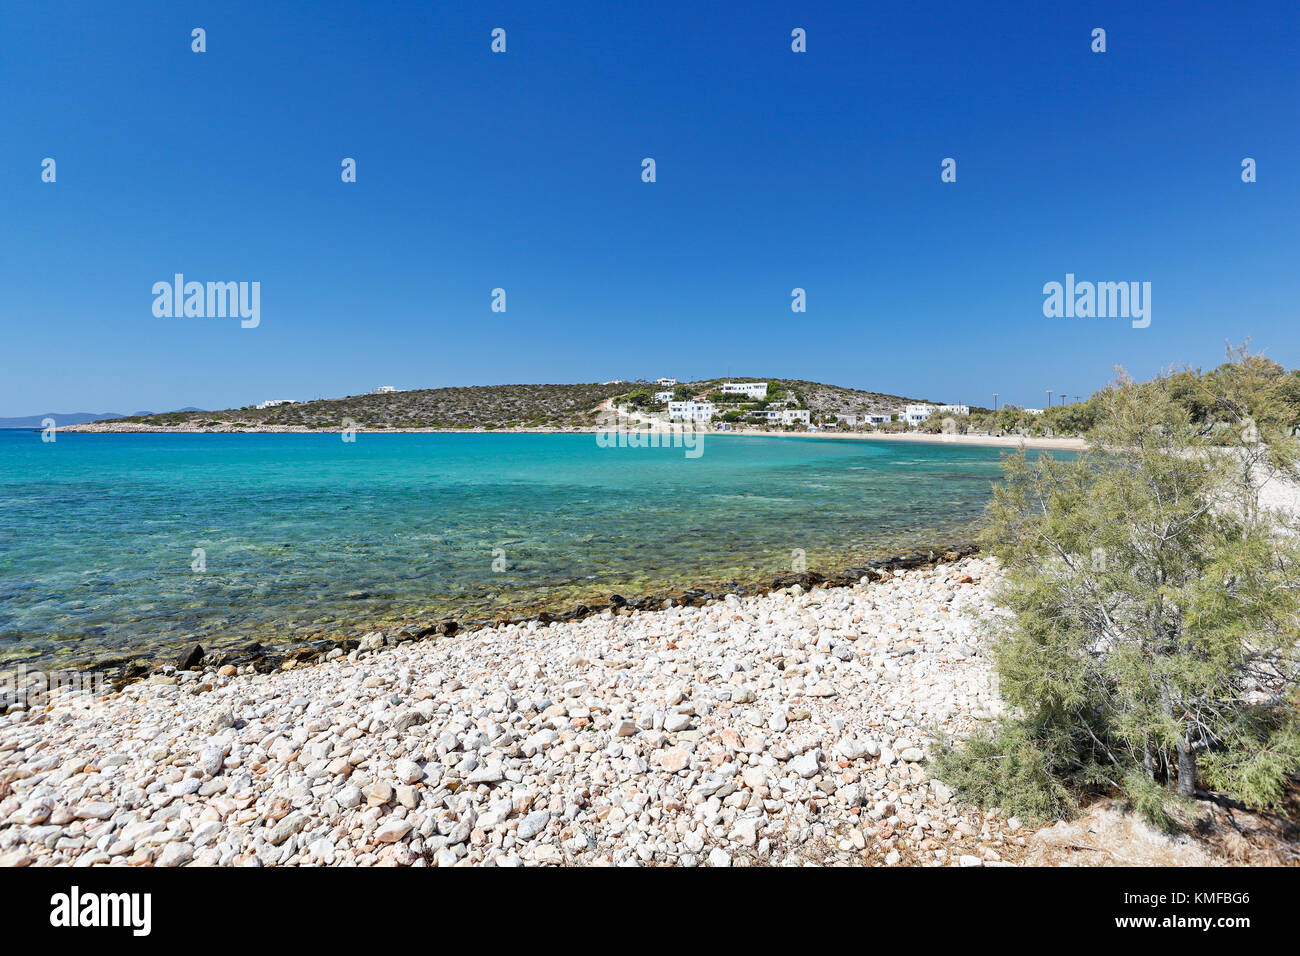 Spiaggia alyki nell isola di Paros, Grecia Foto Stock